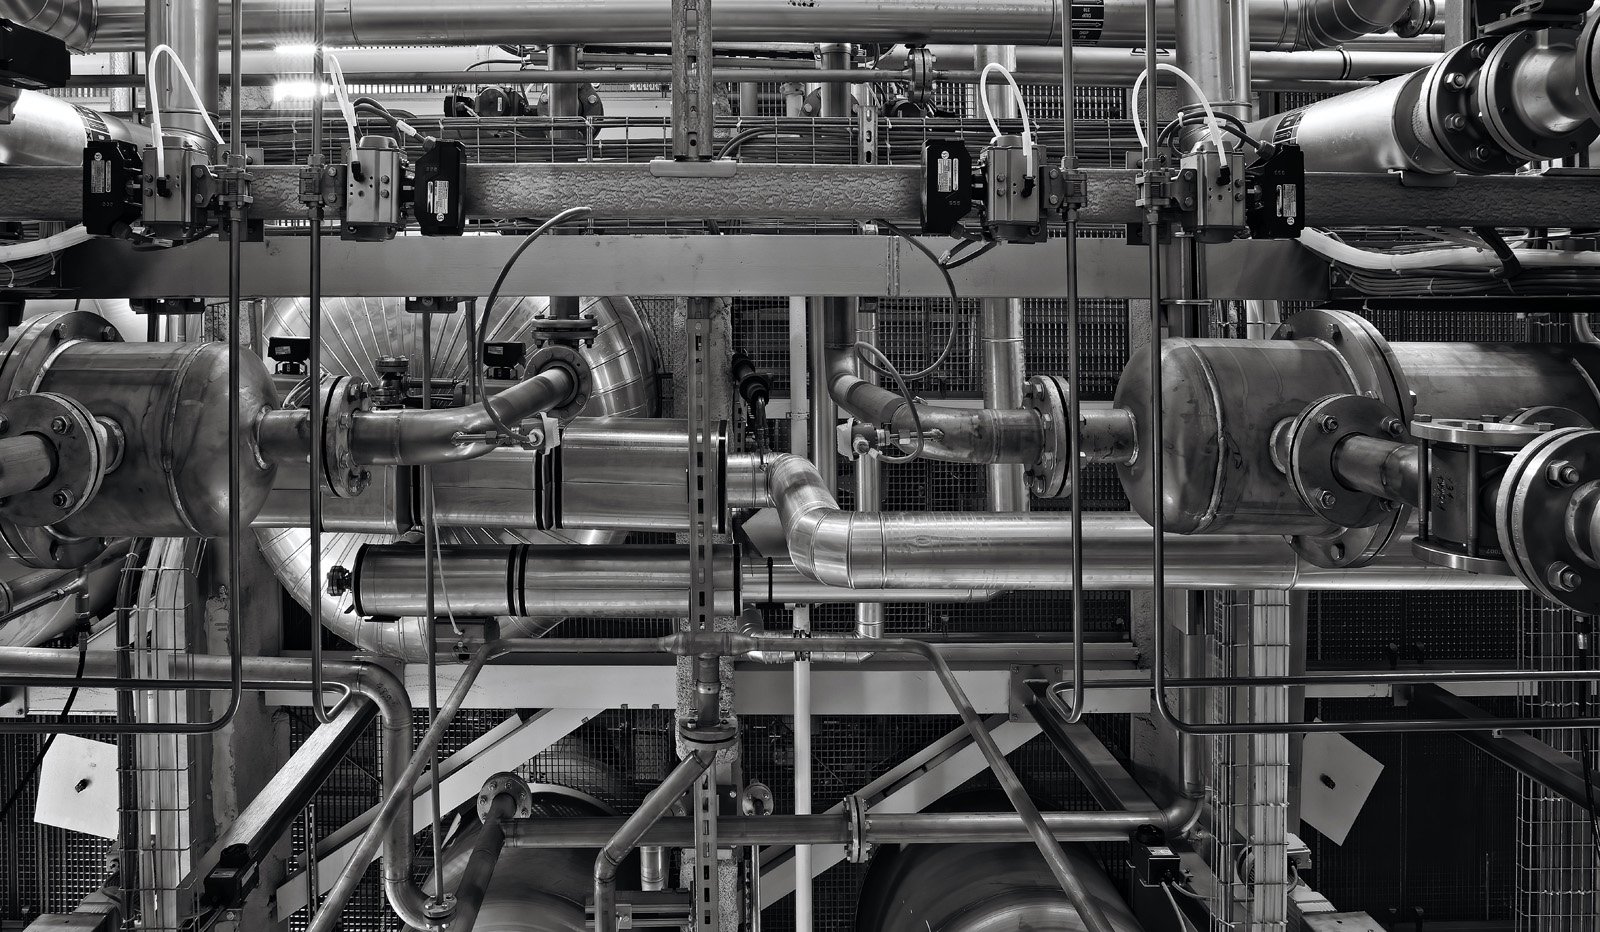 Système de tuyauterie industrielle, endroit où le respect des normes de santé et sécurité industriel est crucial